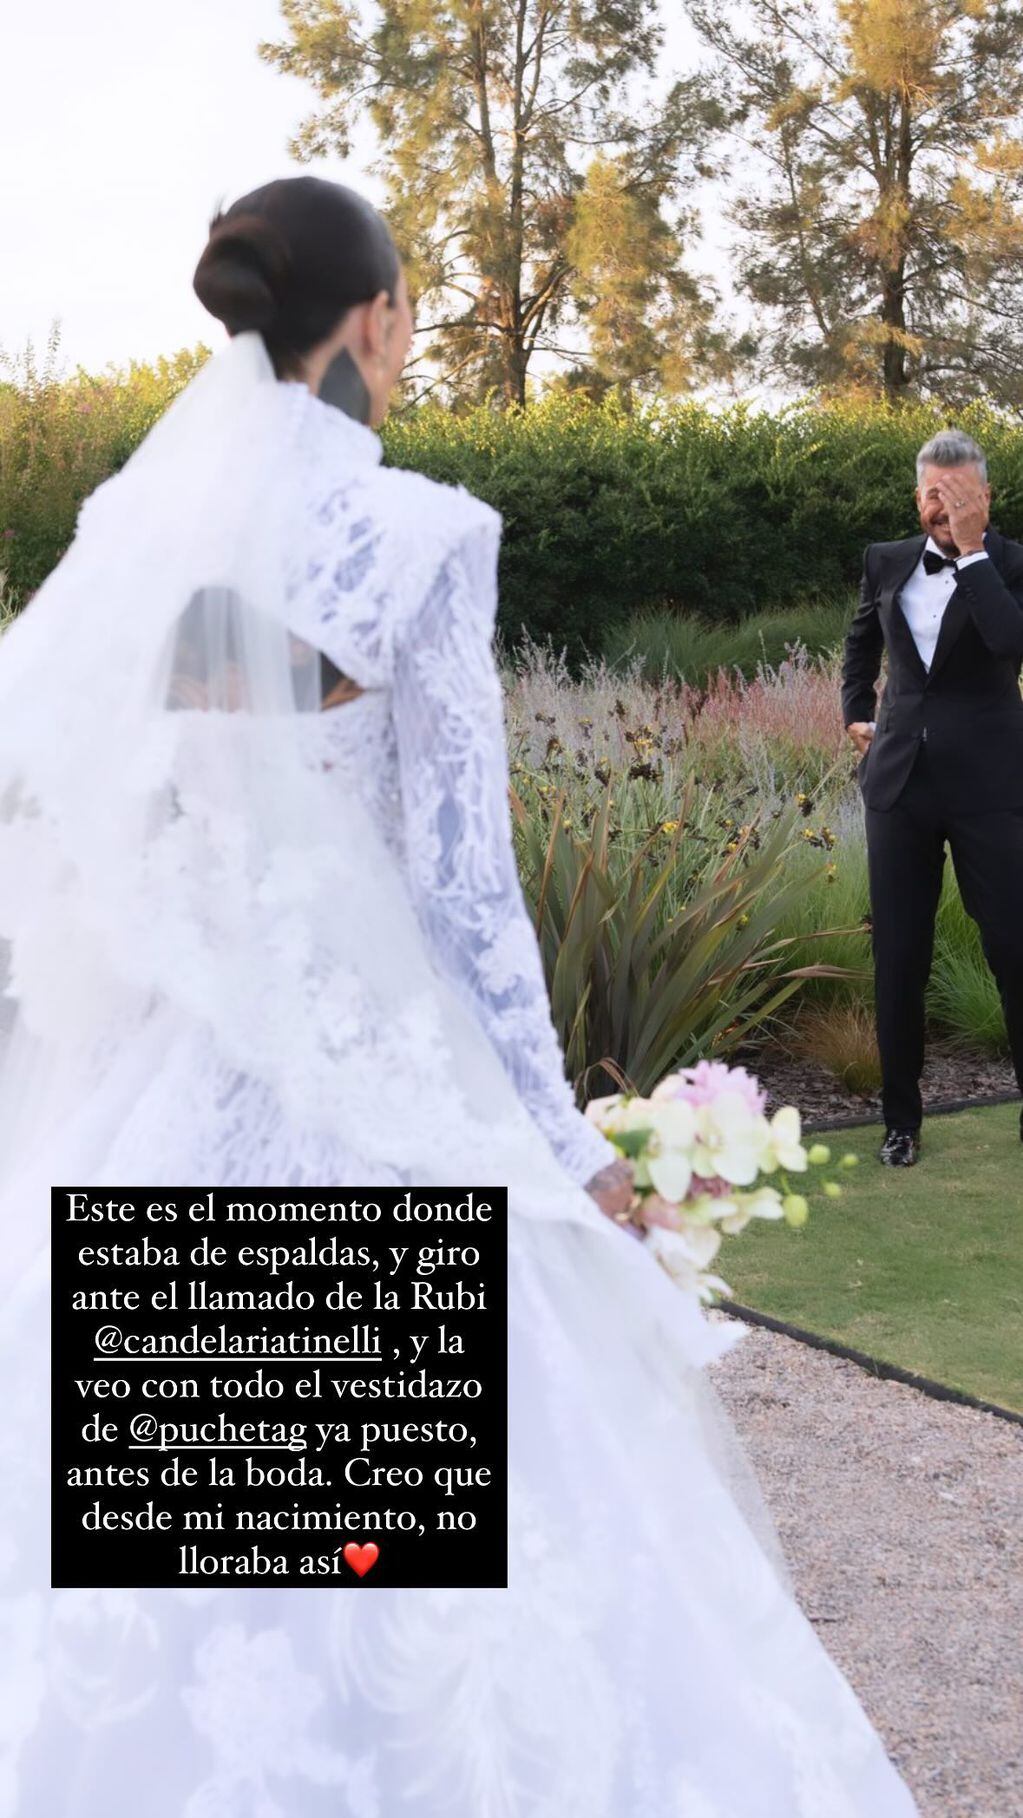 La reacción de Marcelo Tinelli al ver a su hija Candelaria vestida de novia